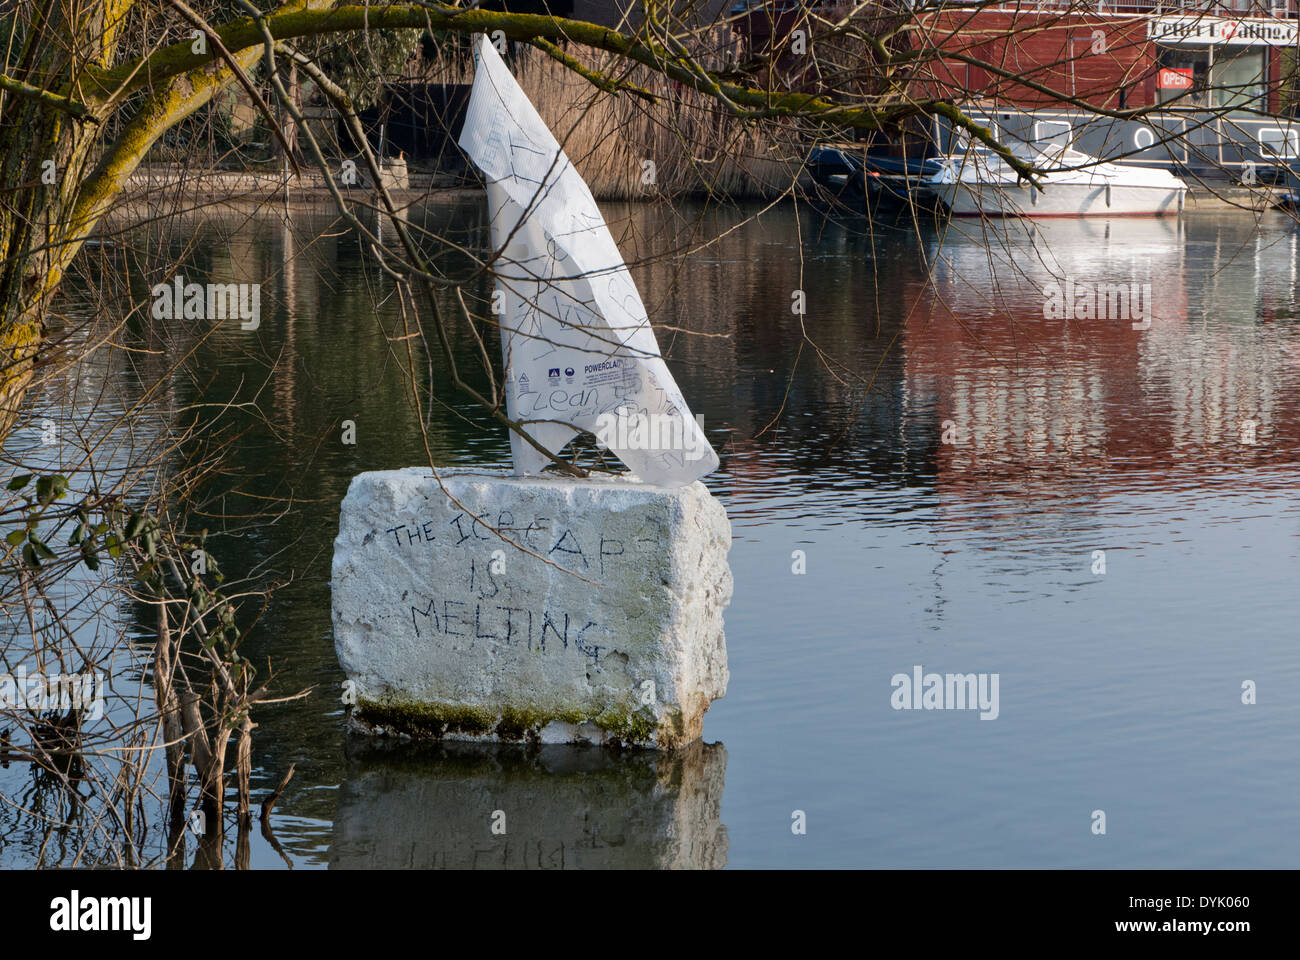 Changement climatique - protestation ce morceau de styromousse flottant avec une voile sur il dit ceci : "La glace fond', Tamise, UK Banque D'Images